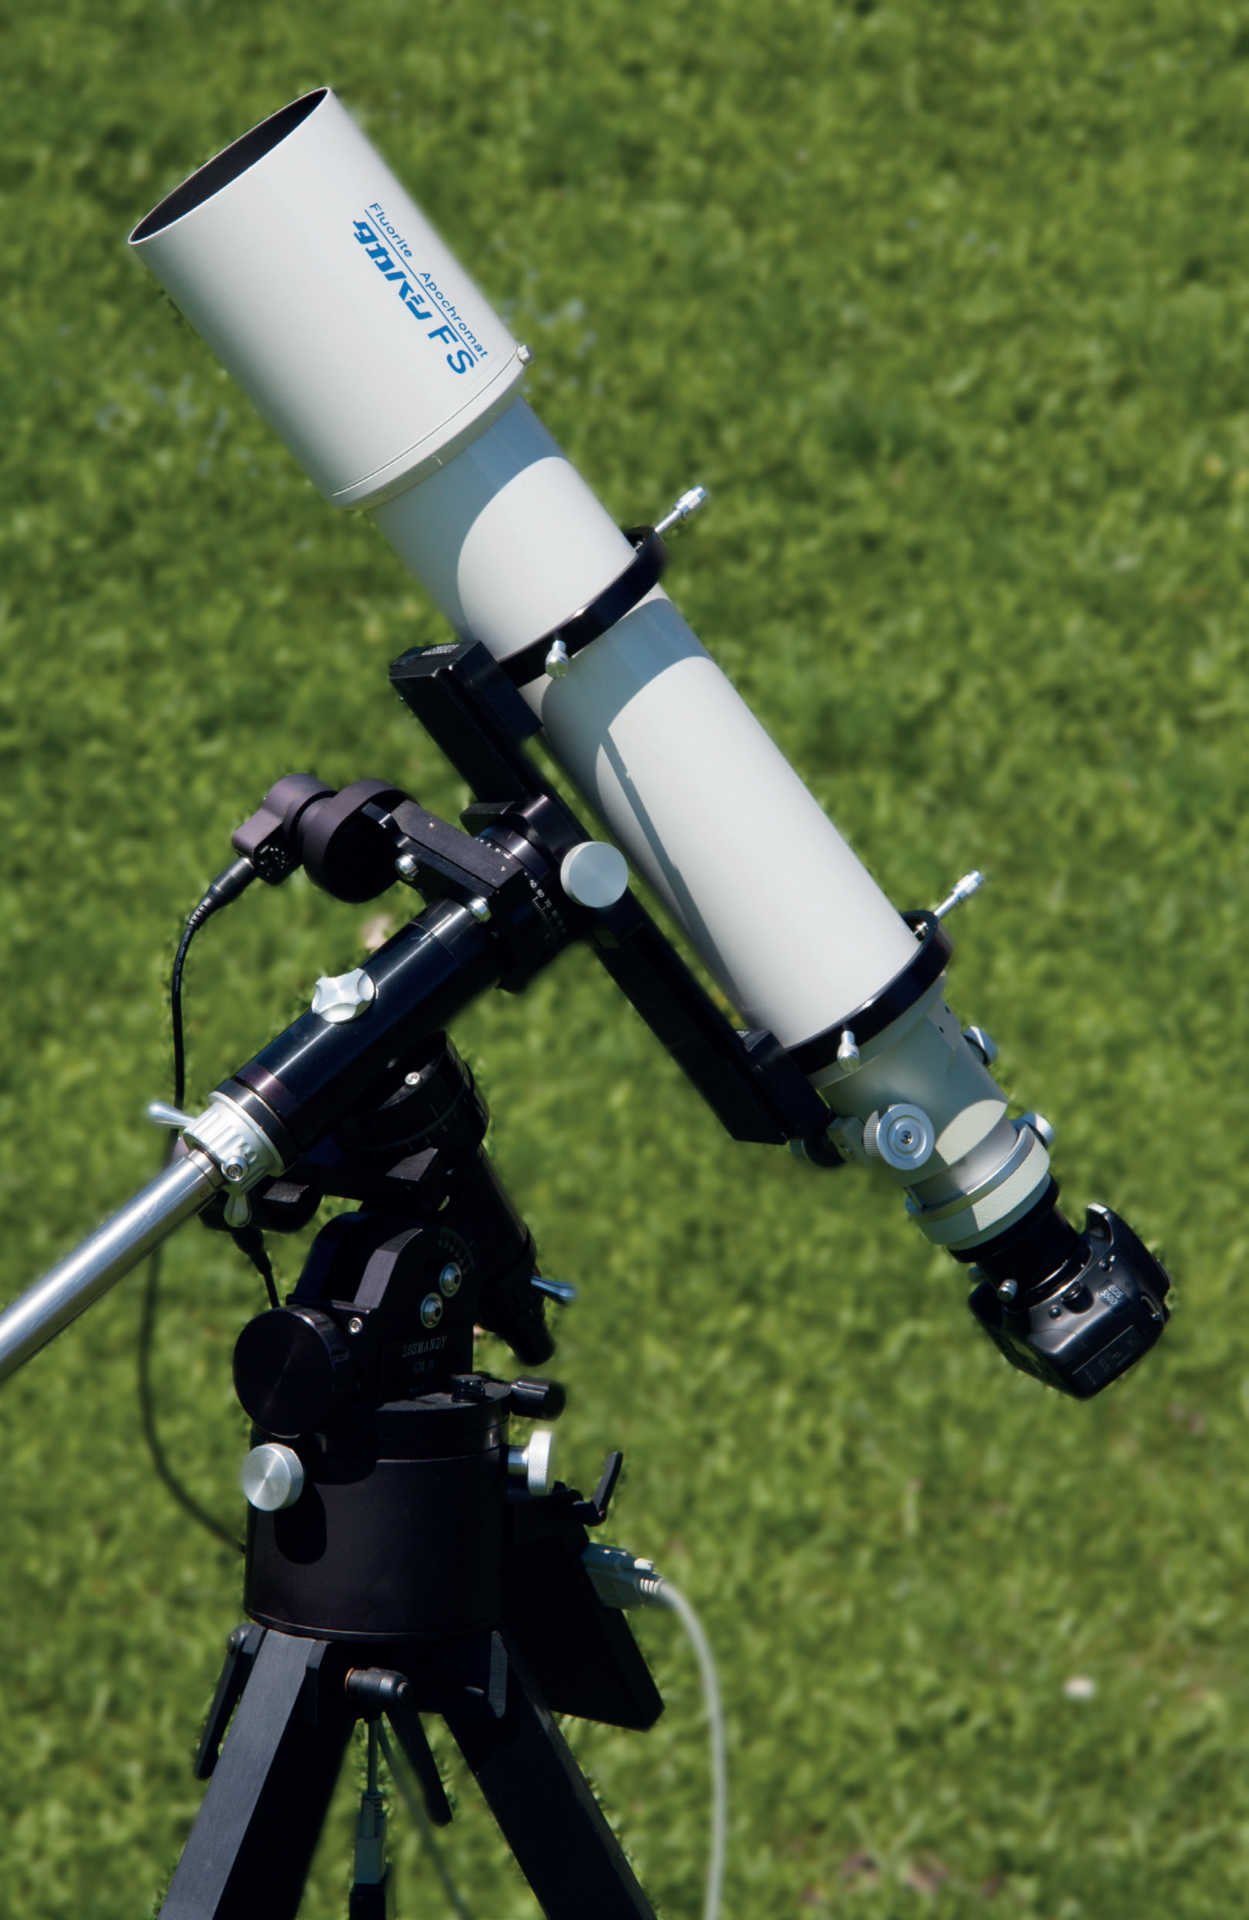 Niezbędny sprzęt do fotografii planetarnej obejmuje to, co wielu miłośników astronomii już ma: stabilny montaż, teleskop (na zdjęciu refraktor o ogniskowej ok. 1000mm), oraz lustrzankę cyfrową z odpowiednim adapterem. U. Dittler